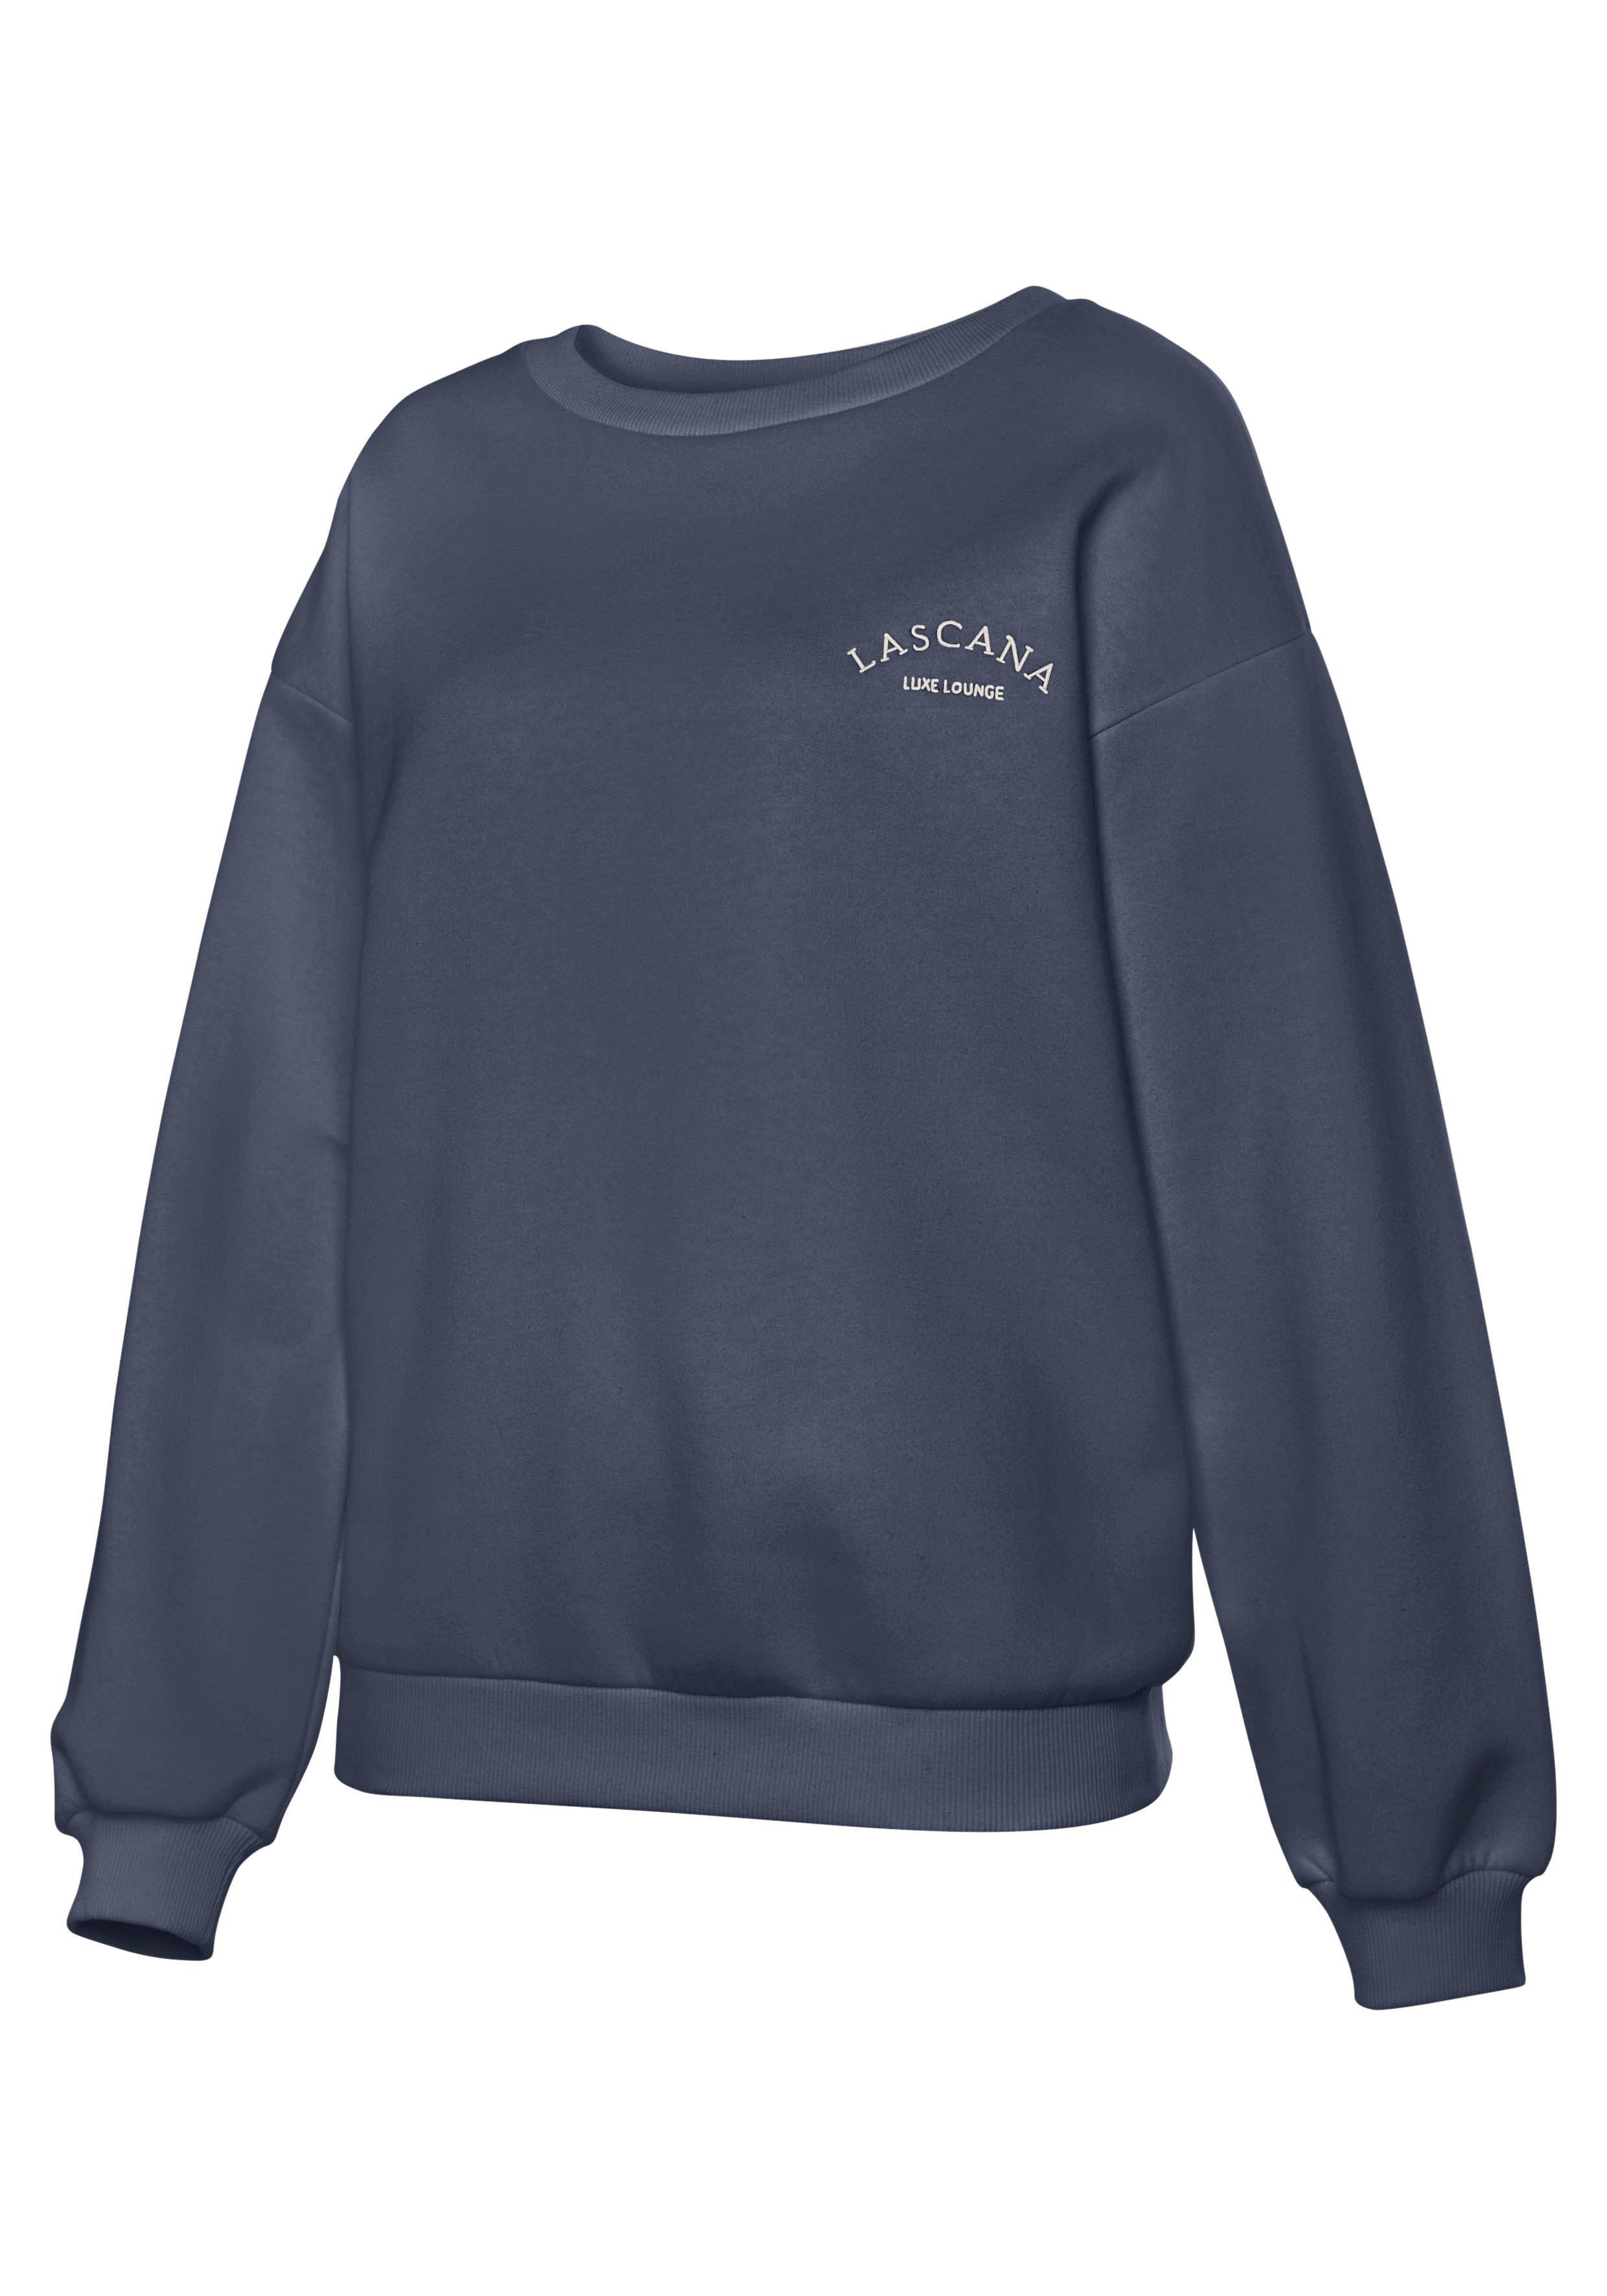 -Pullover mit LASCANA weiten Loungewear, Ärmeln, anthrazit Loungeanzug Sweatshirt